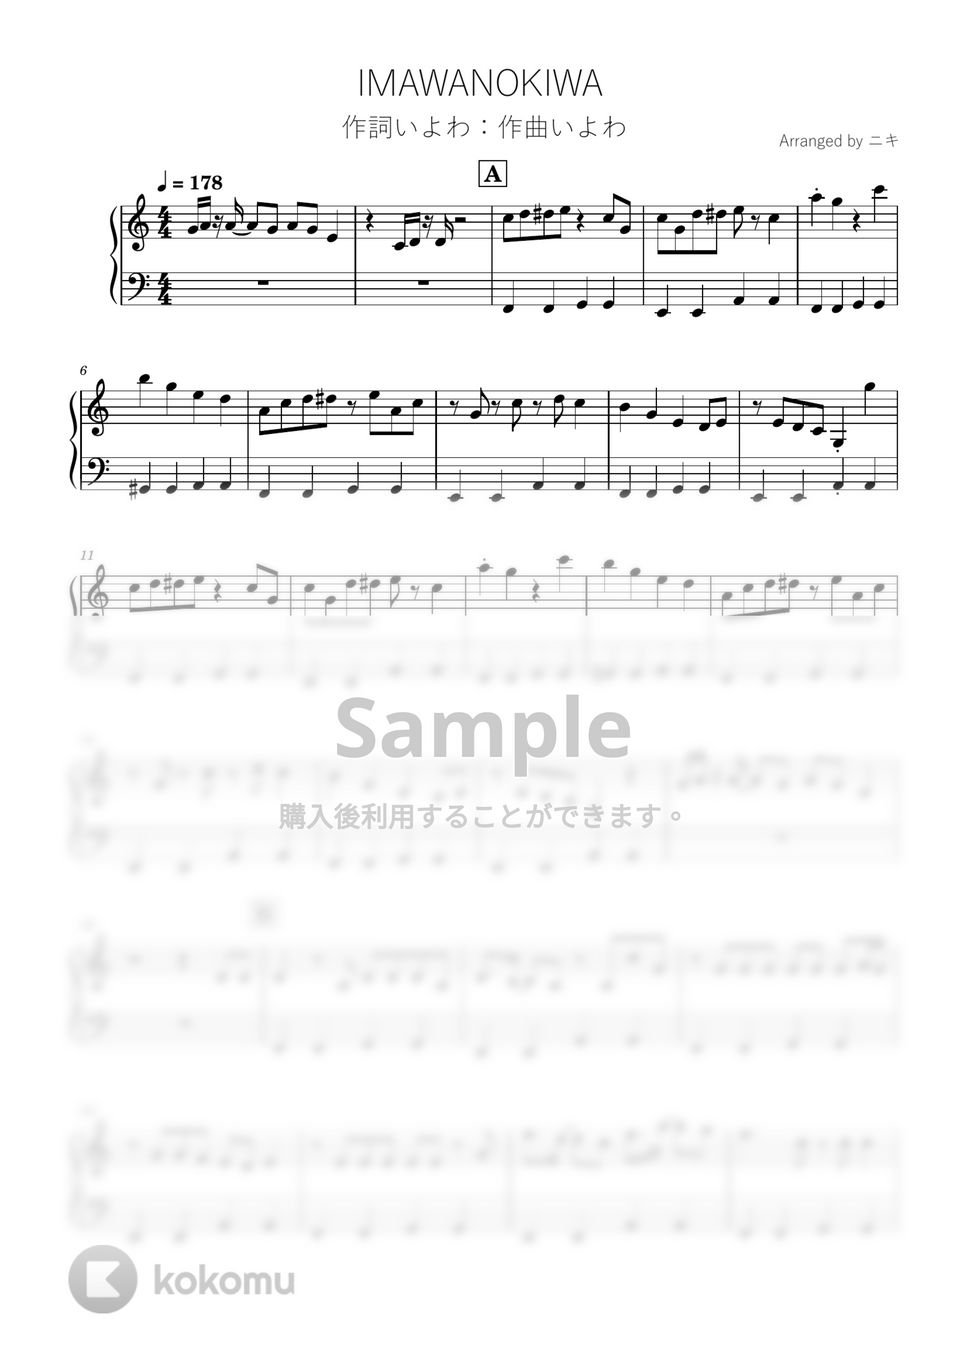 いよわ - IMAWANOKIWA (ピアノ / 初級 / いよわ) by 簡単ボカロピアノch ニキ